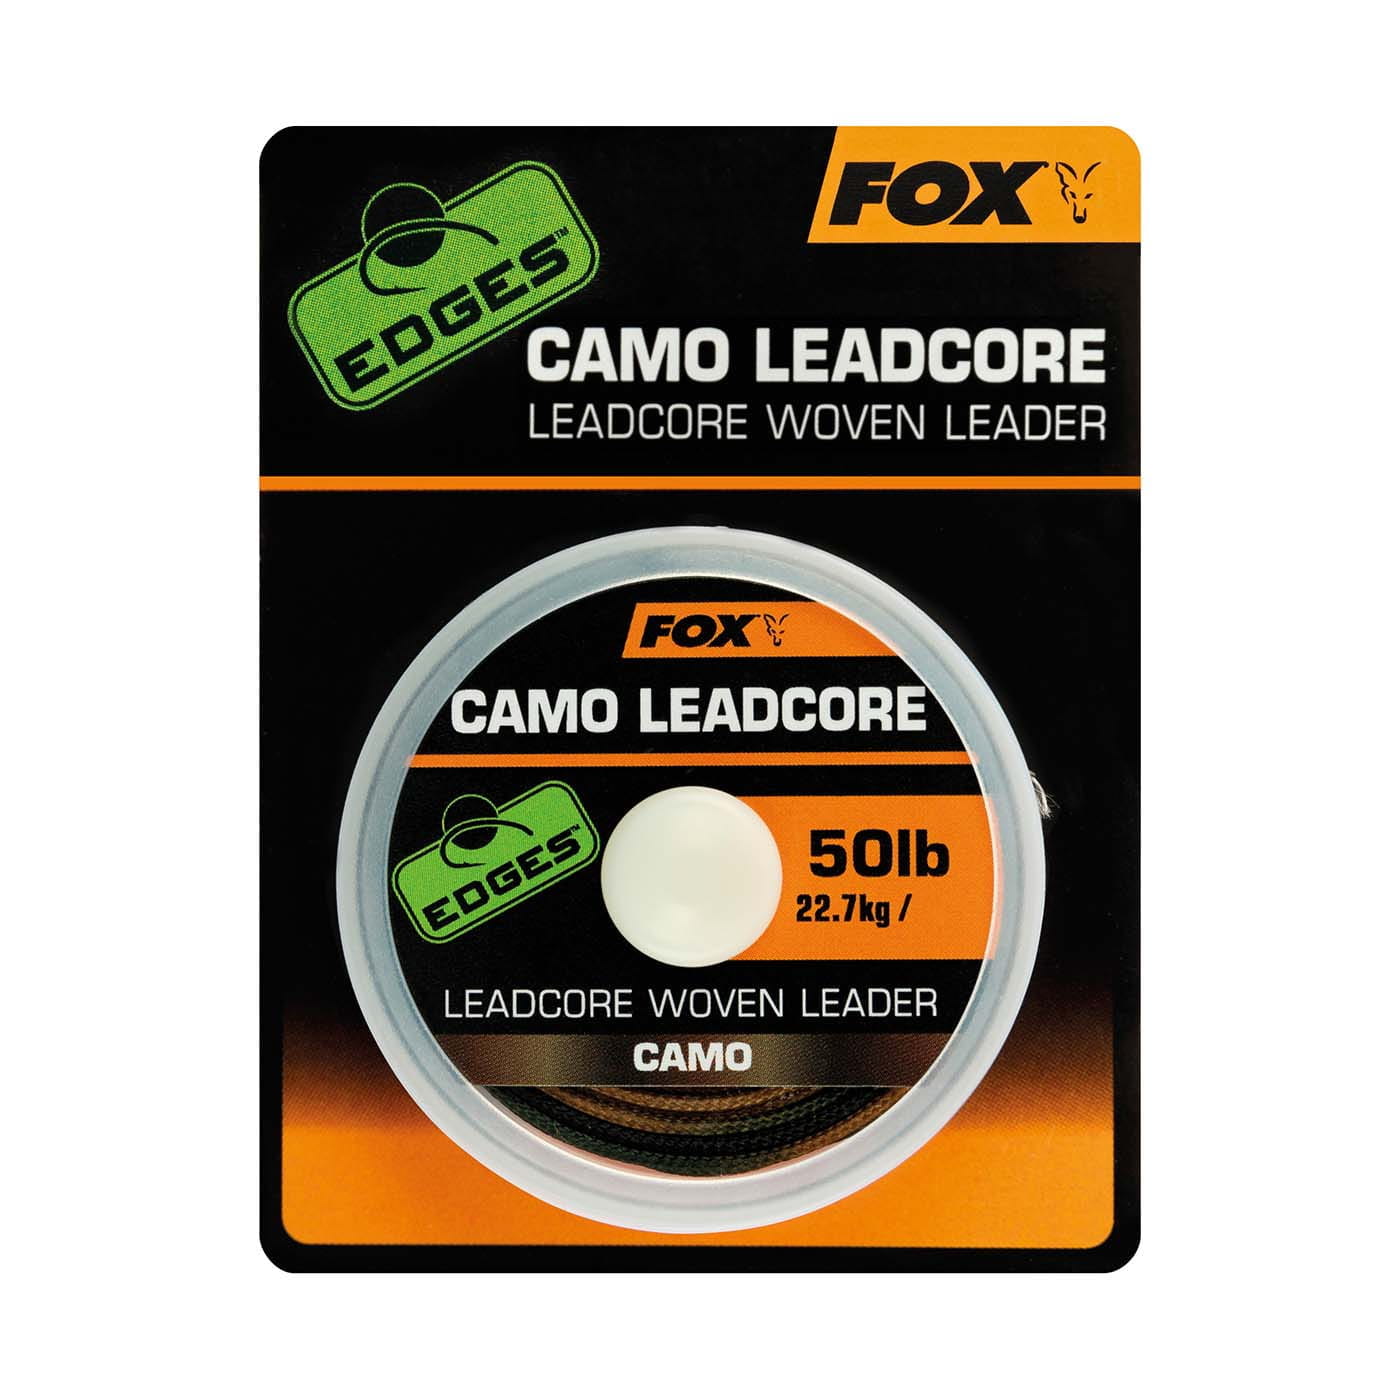 Camo Leadcore Woven Leader